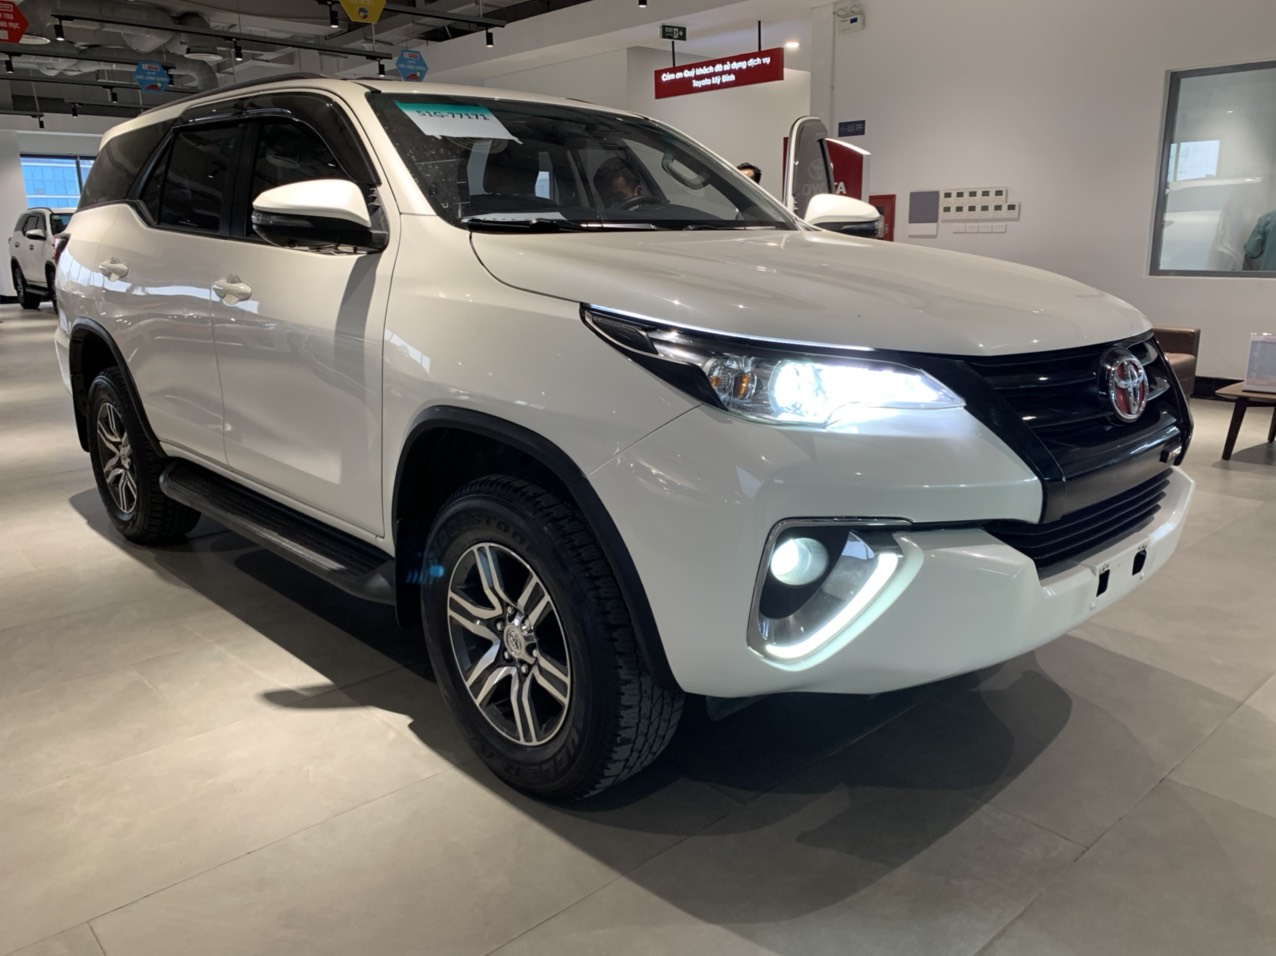 Mua Bán Xe Toyota Fortuner 27v 4x4 2018 Cũ Giá Rẻ Chính Chủ